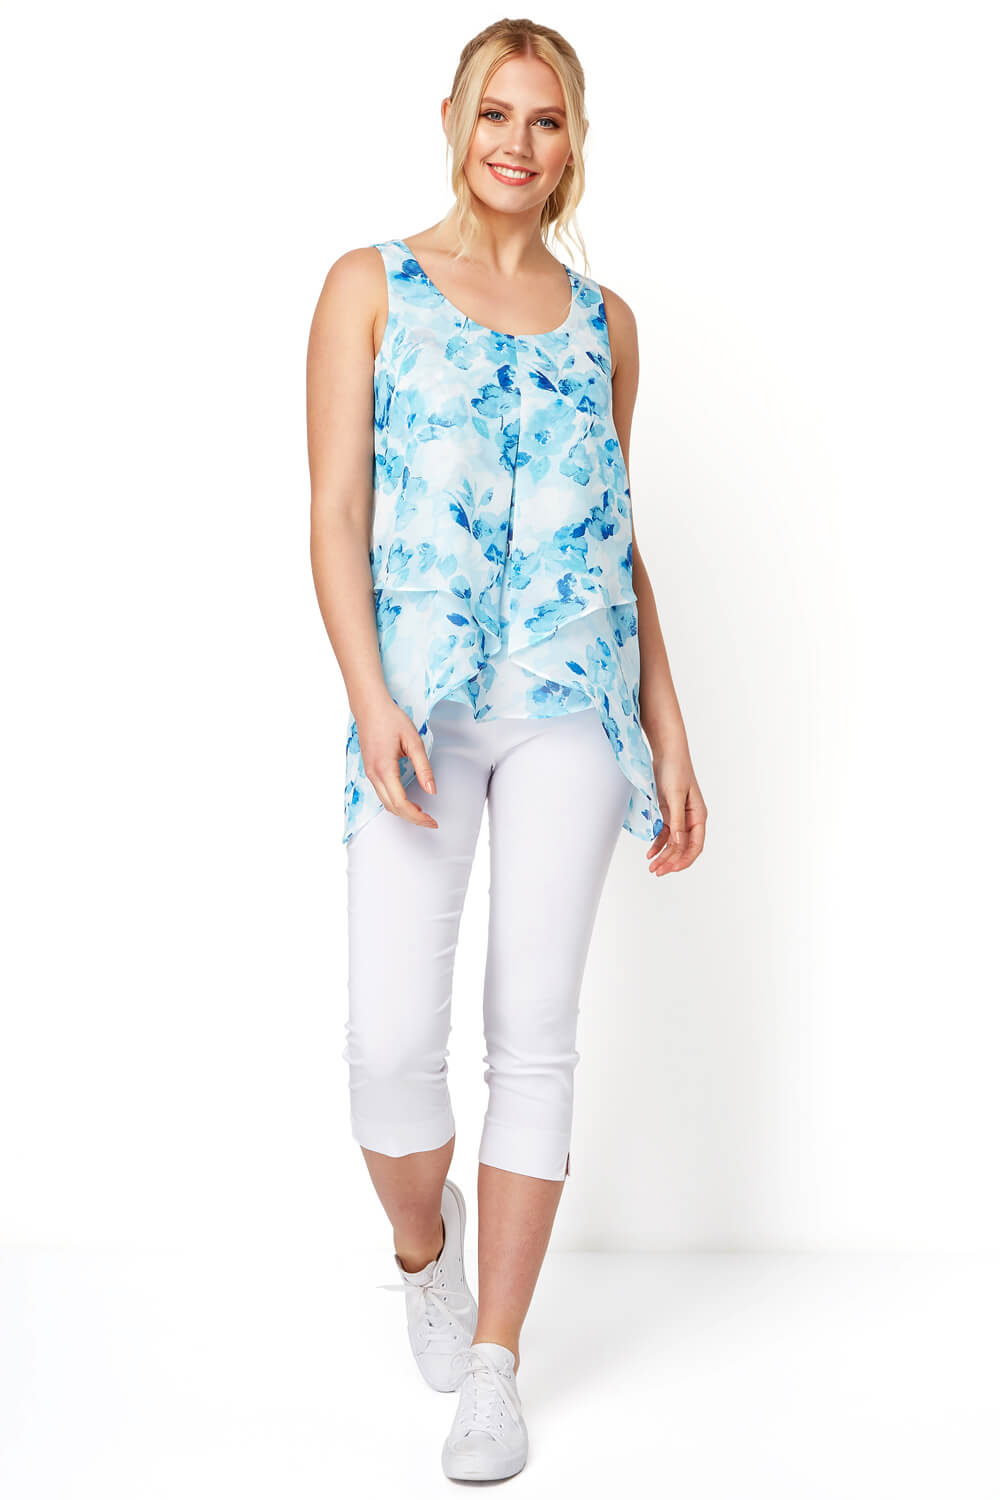 Blue Floral Print Asymmetric Chiffon Vest Top, Image 2 of 8